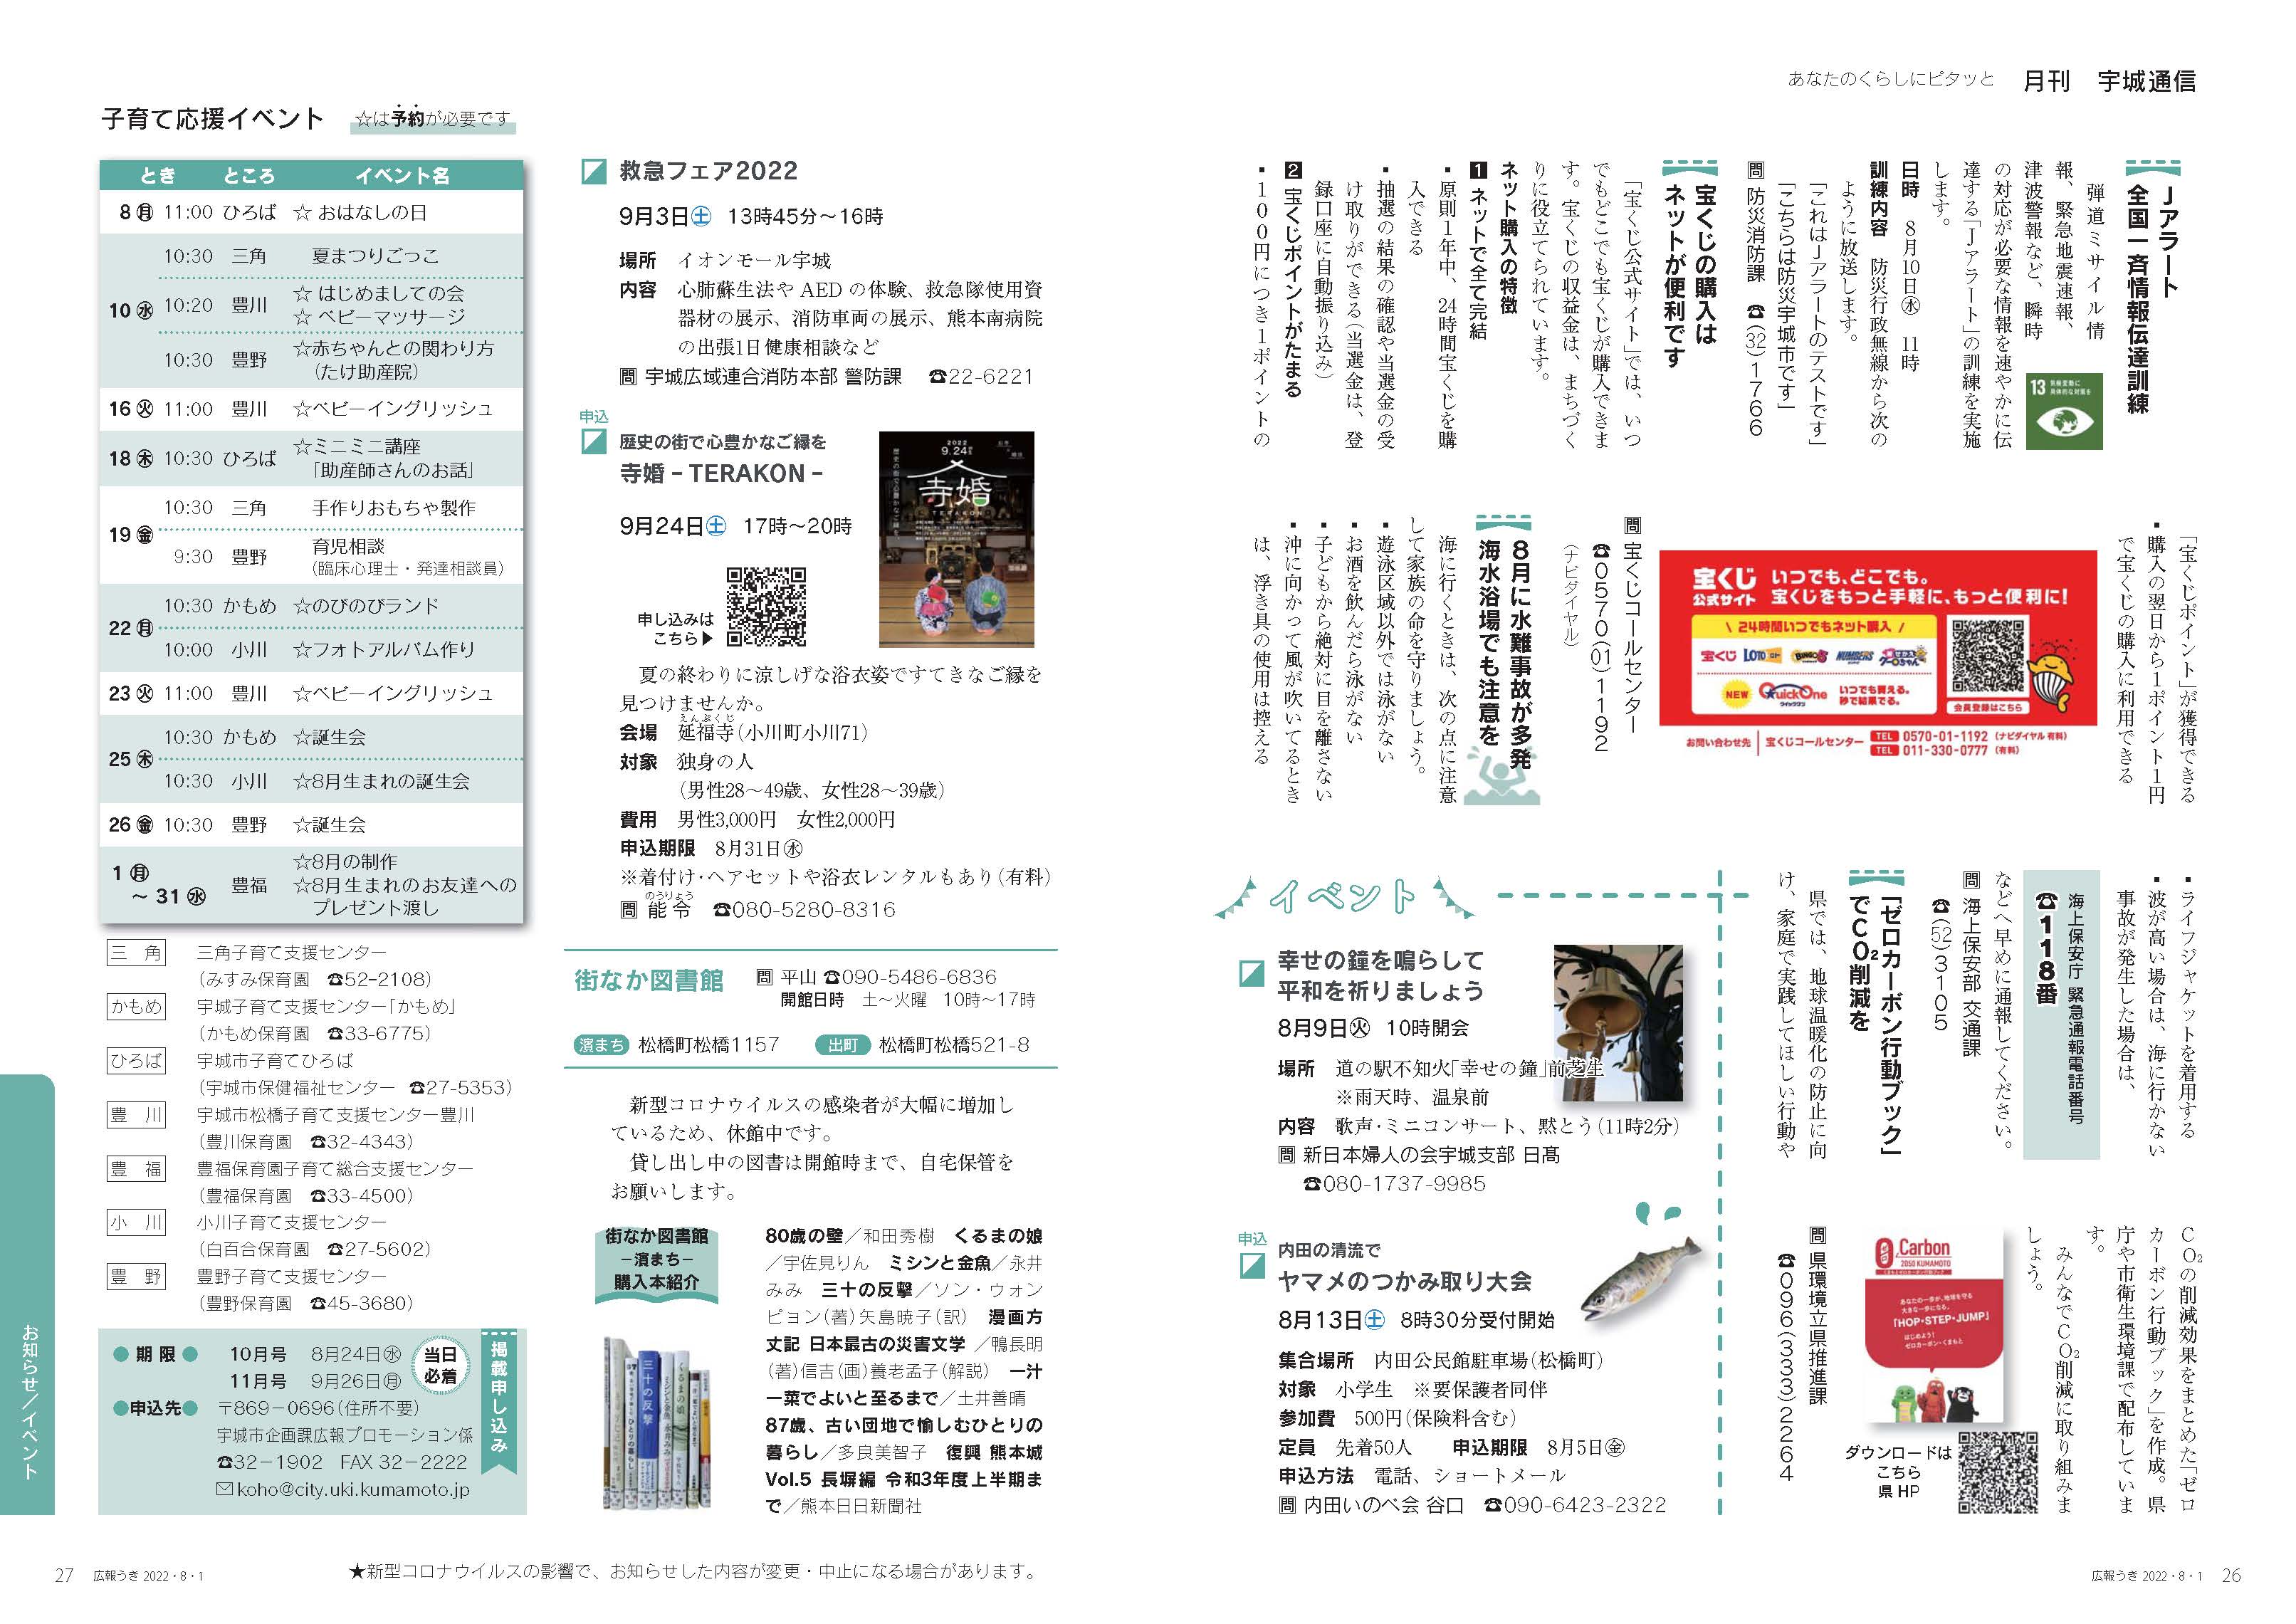 P26、P27　あなたのくらしにピタッと　月刊 宇城通信の画像、詳細はPDFファイルをご参照ください